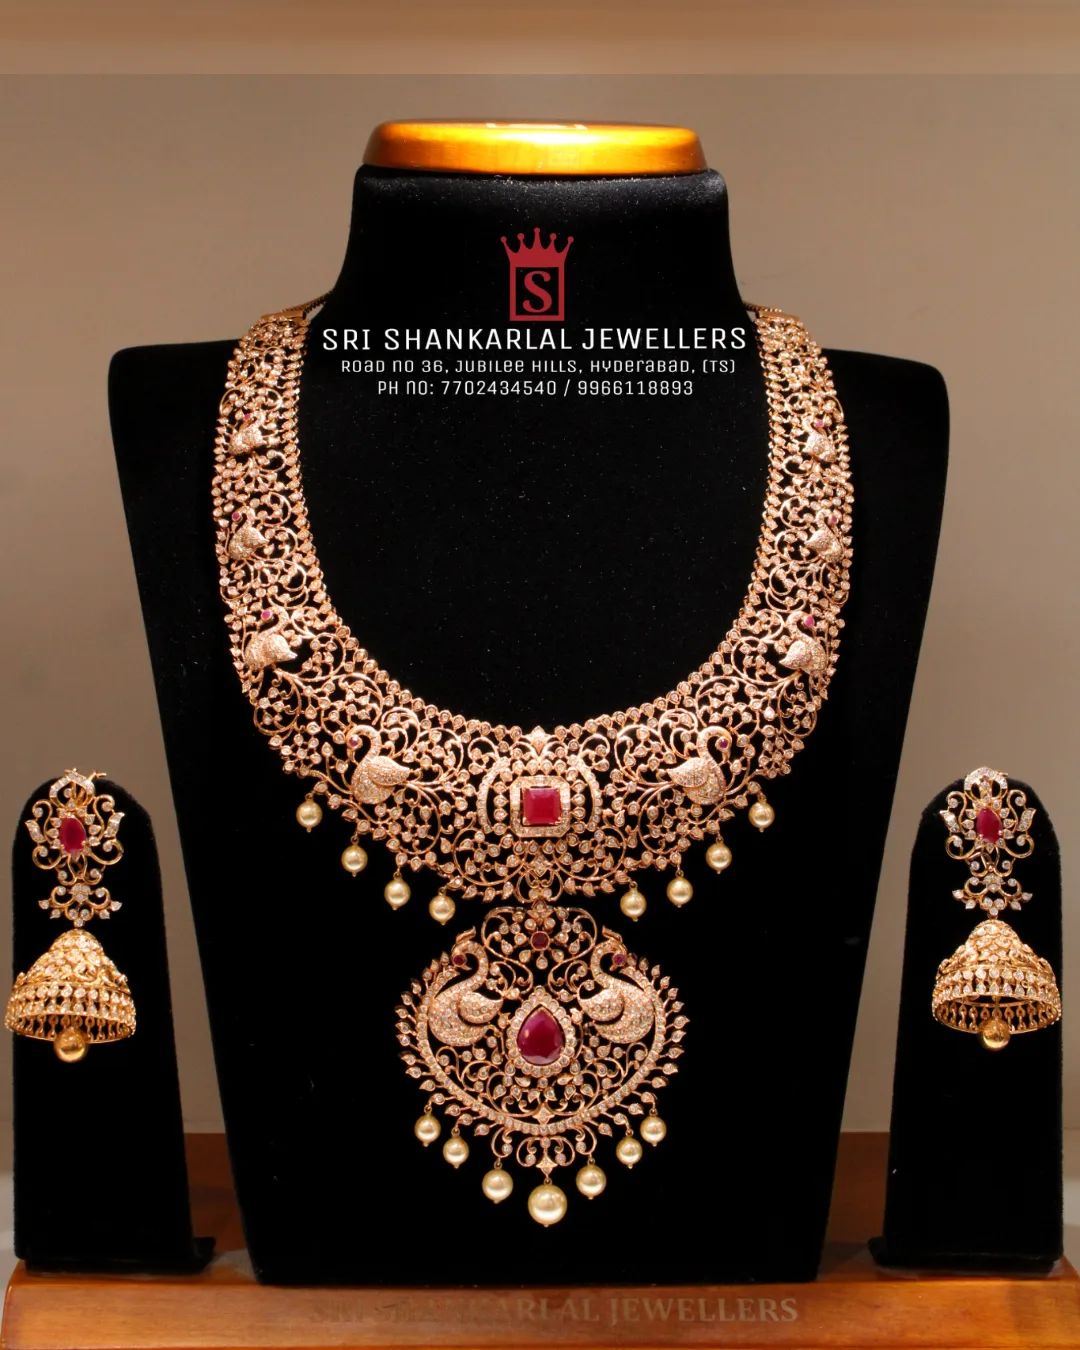 Sri shankarlal jewellers review